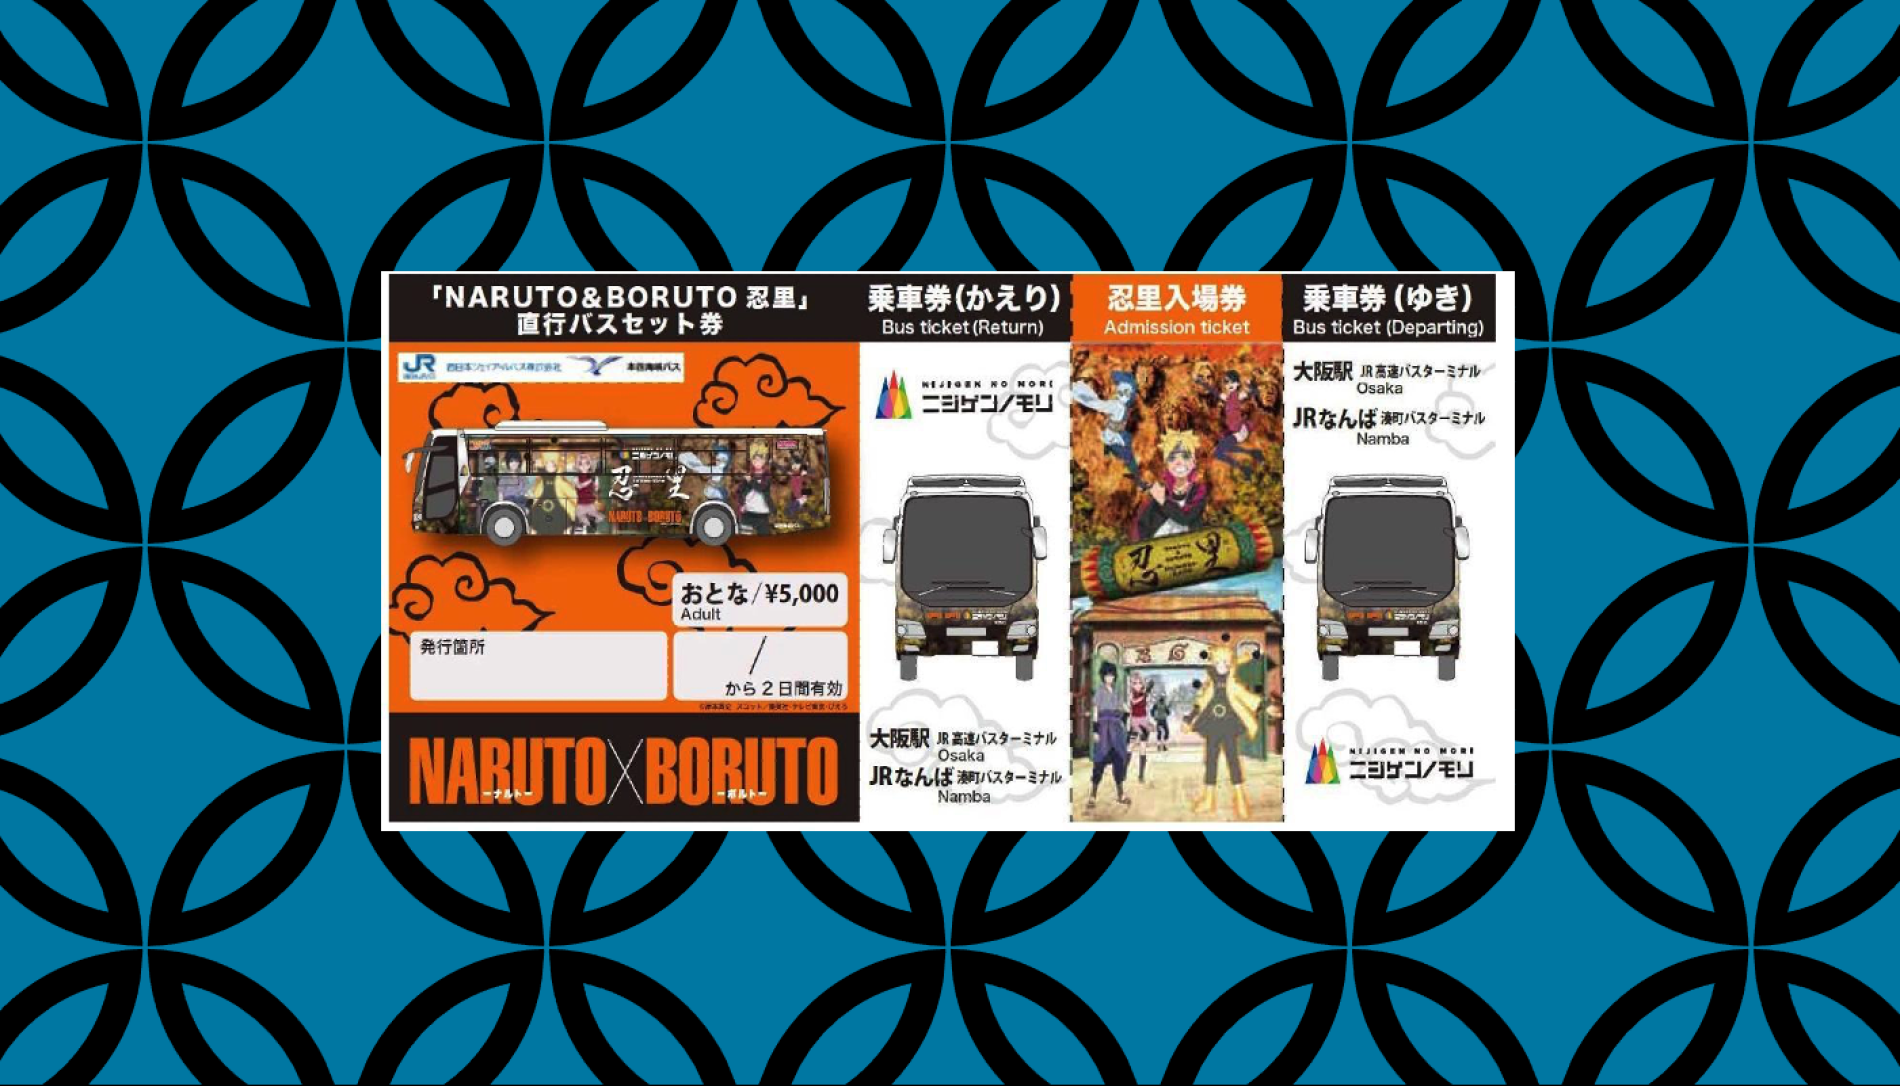 아와지시마 니지겐 노모리 [Naruto & Boruto 닌자 마을] 직행 버스 세트권｜왕복 버스＋입장권 - Kkday